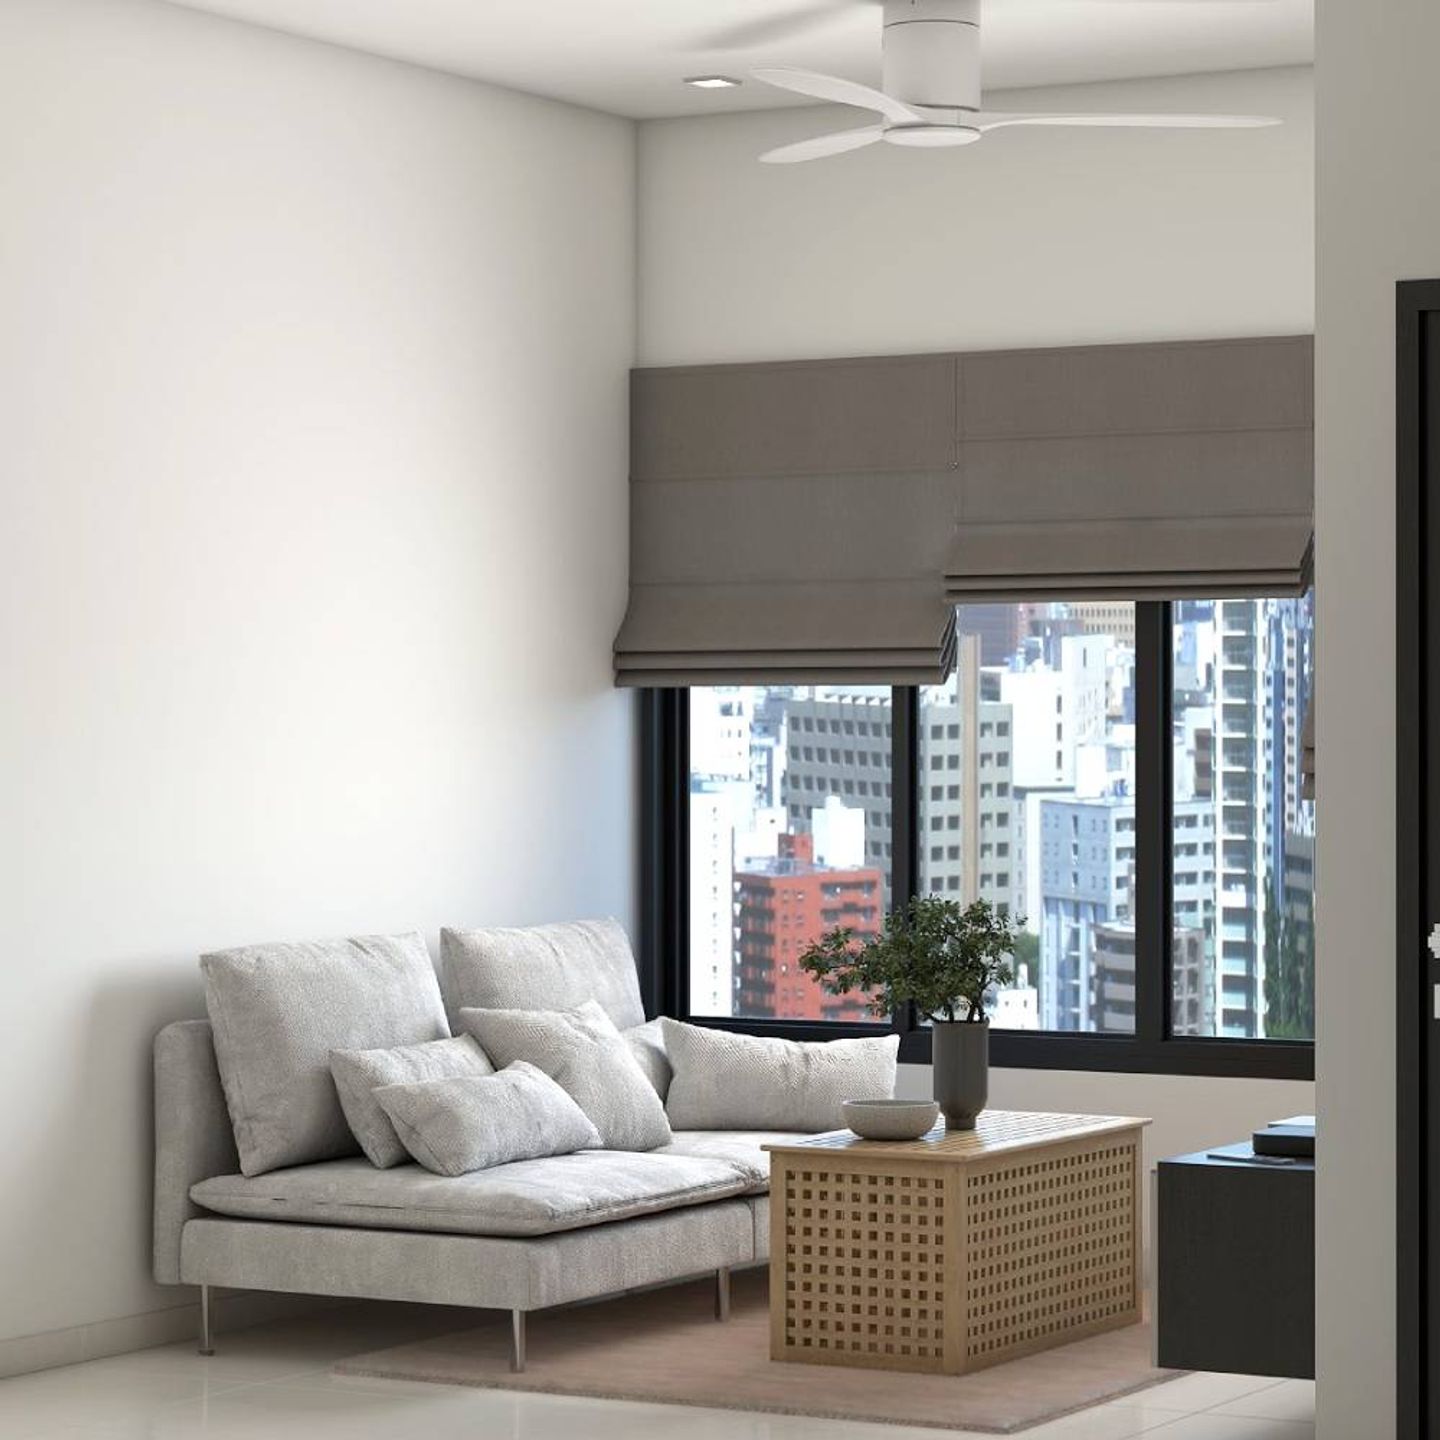 12 m² Living Room Design With Off-White Sofa-Cum-Bed - Livspace